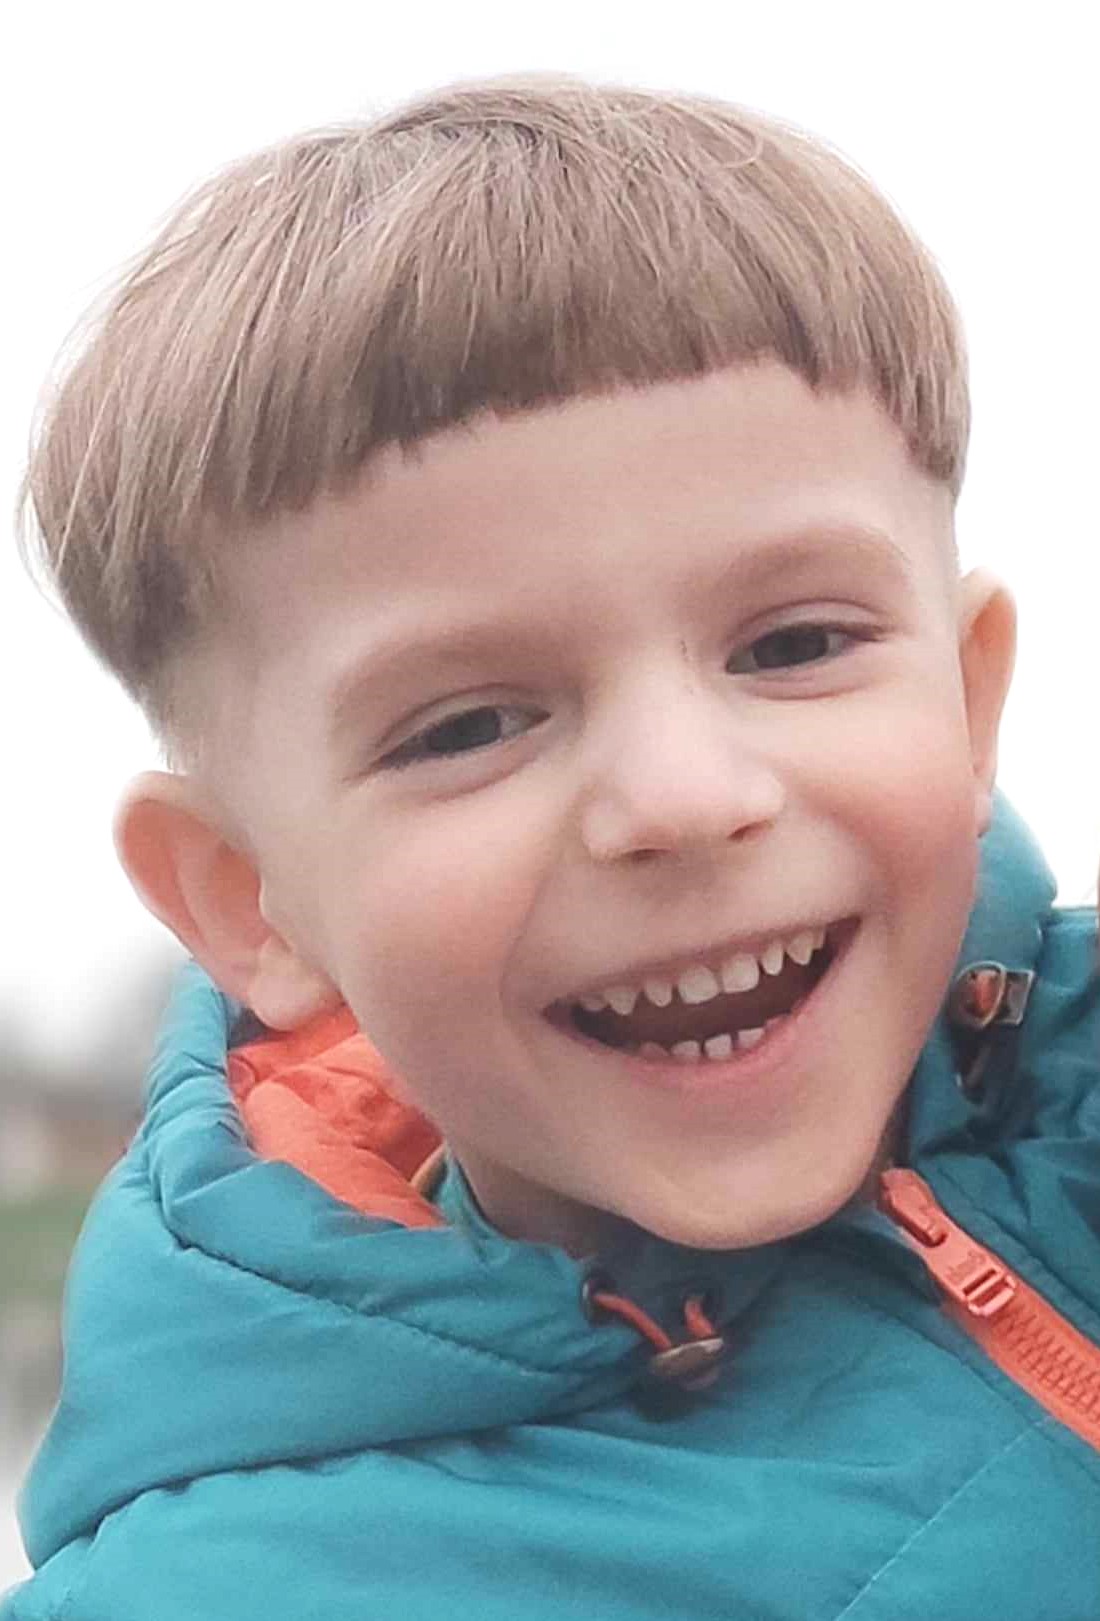 Загибель 5-річного Велеса після походу до стоматолога: у справі спливли неочікувані подробиці